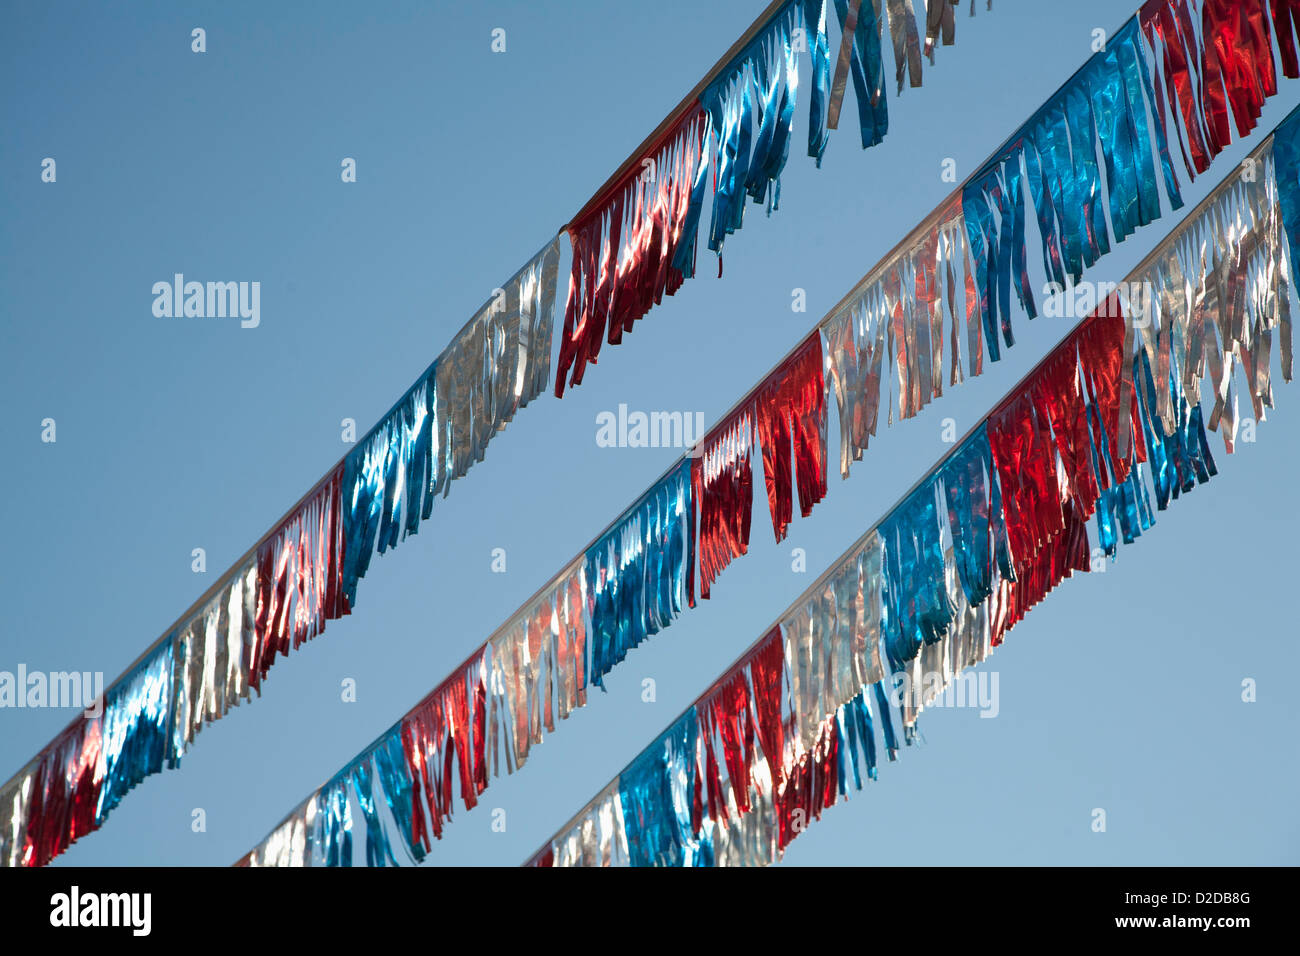 Amerikanische Flagge farbige Luftschlangen vor einem strahlend blauen Himmel Stockfoto